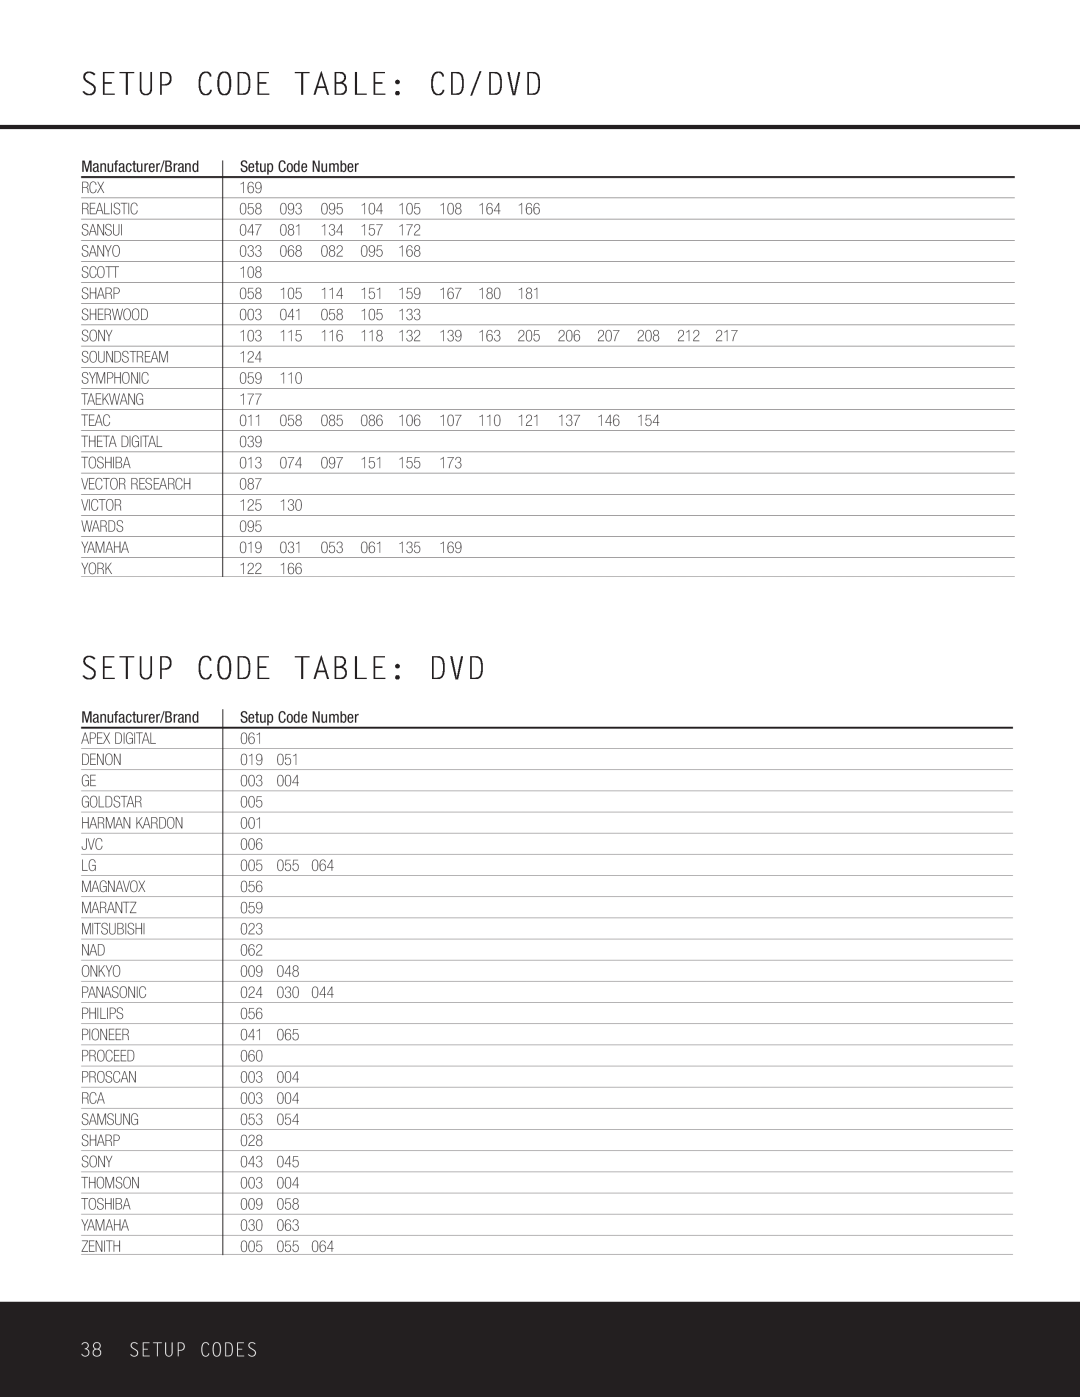 Harman-Kardon AVR 125 owner manual Setup Code Table Cd/Dvd, Setup Code Table: Dvd, Setup Codes 